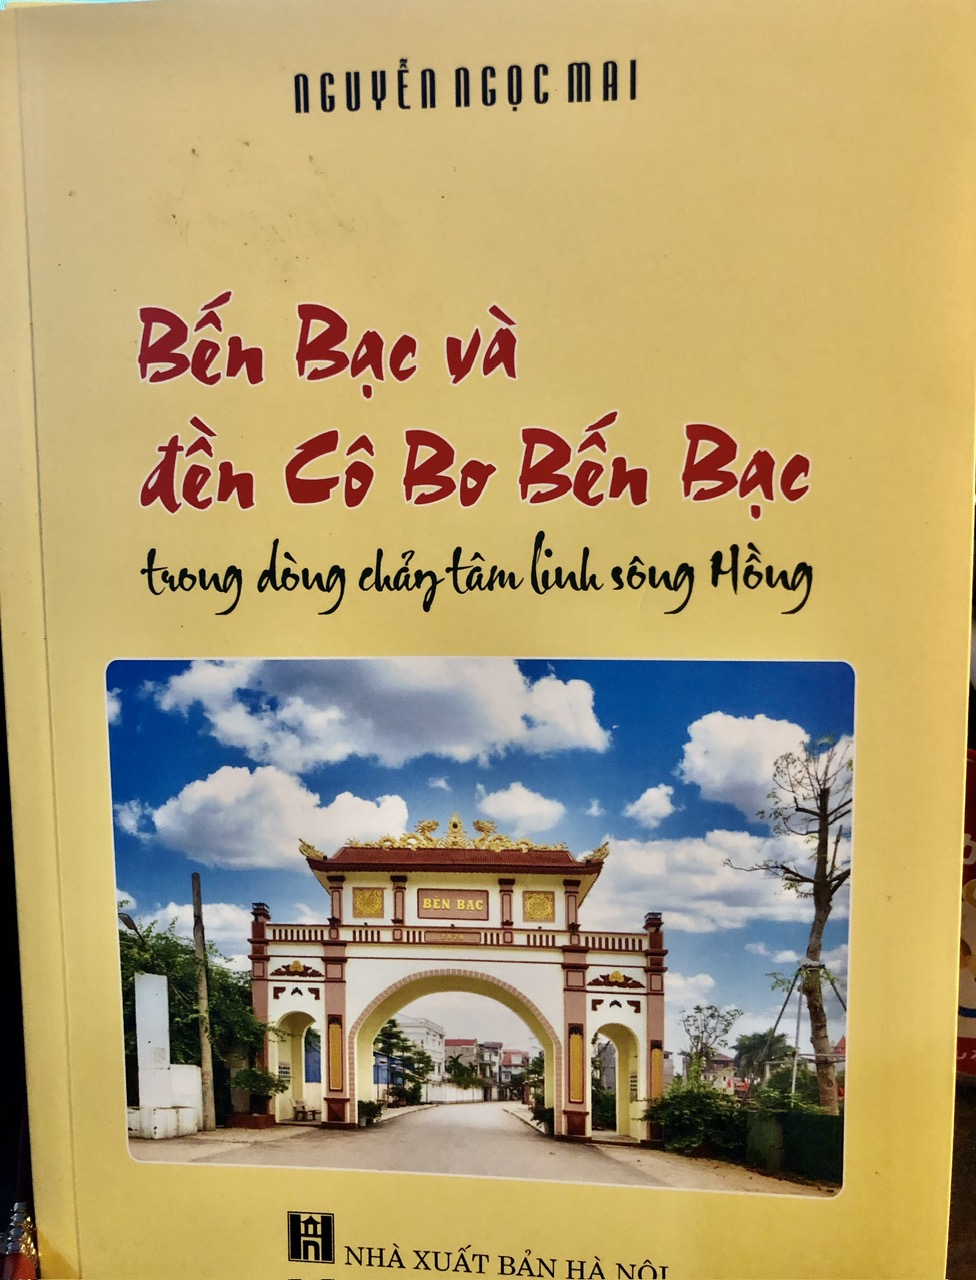 cổng chào dẫn vào di tích bến Bạc và đền cô Bơ Bến Bạc 144 An Dương Vương - Tây Hồ - HN.